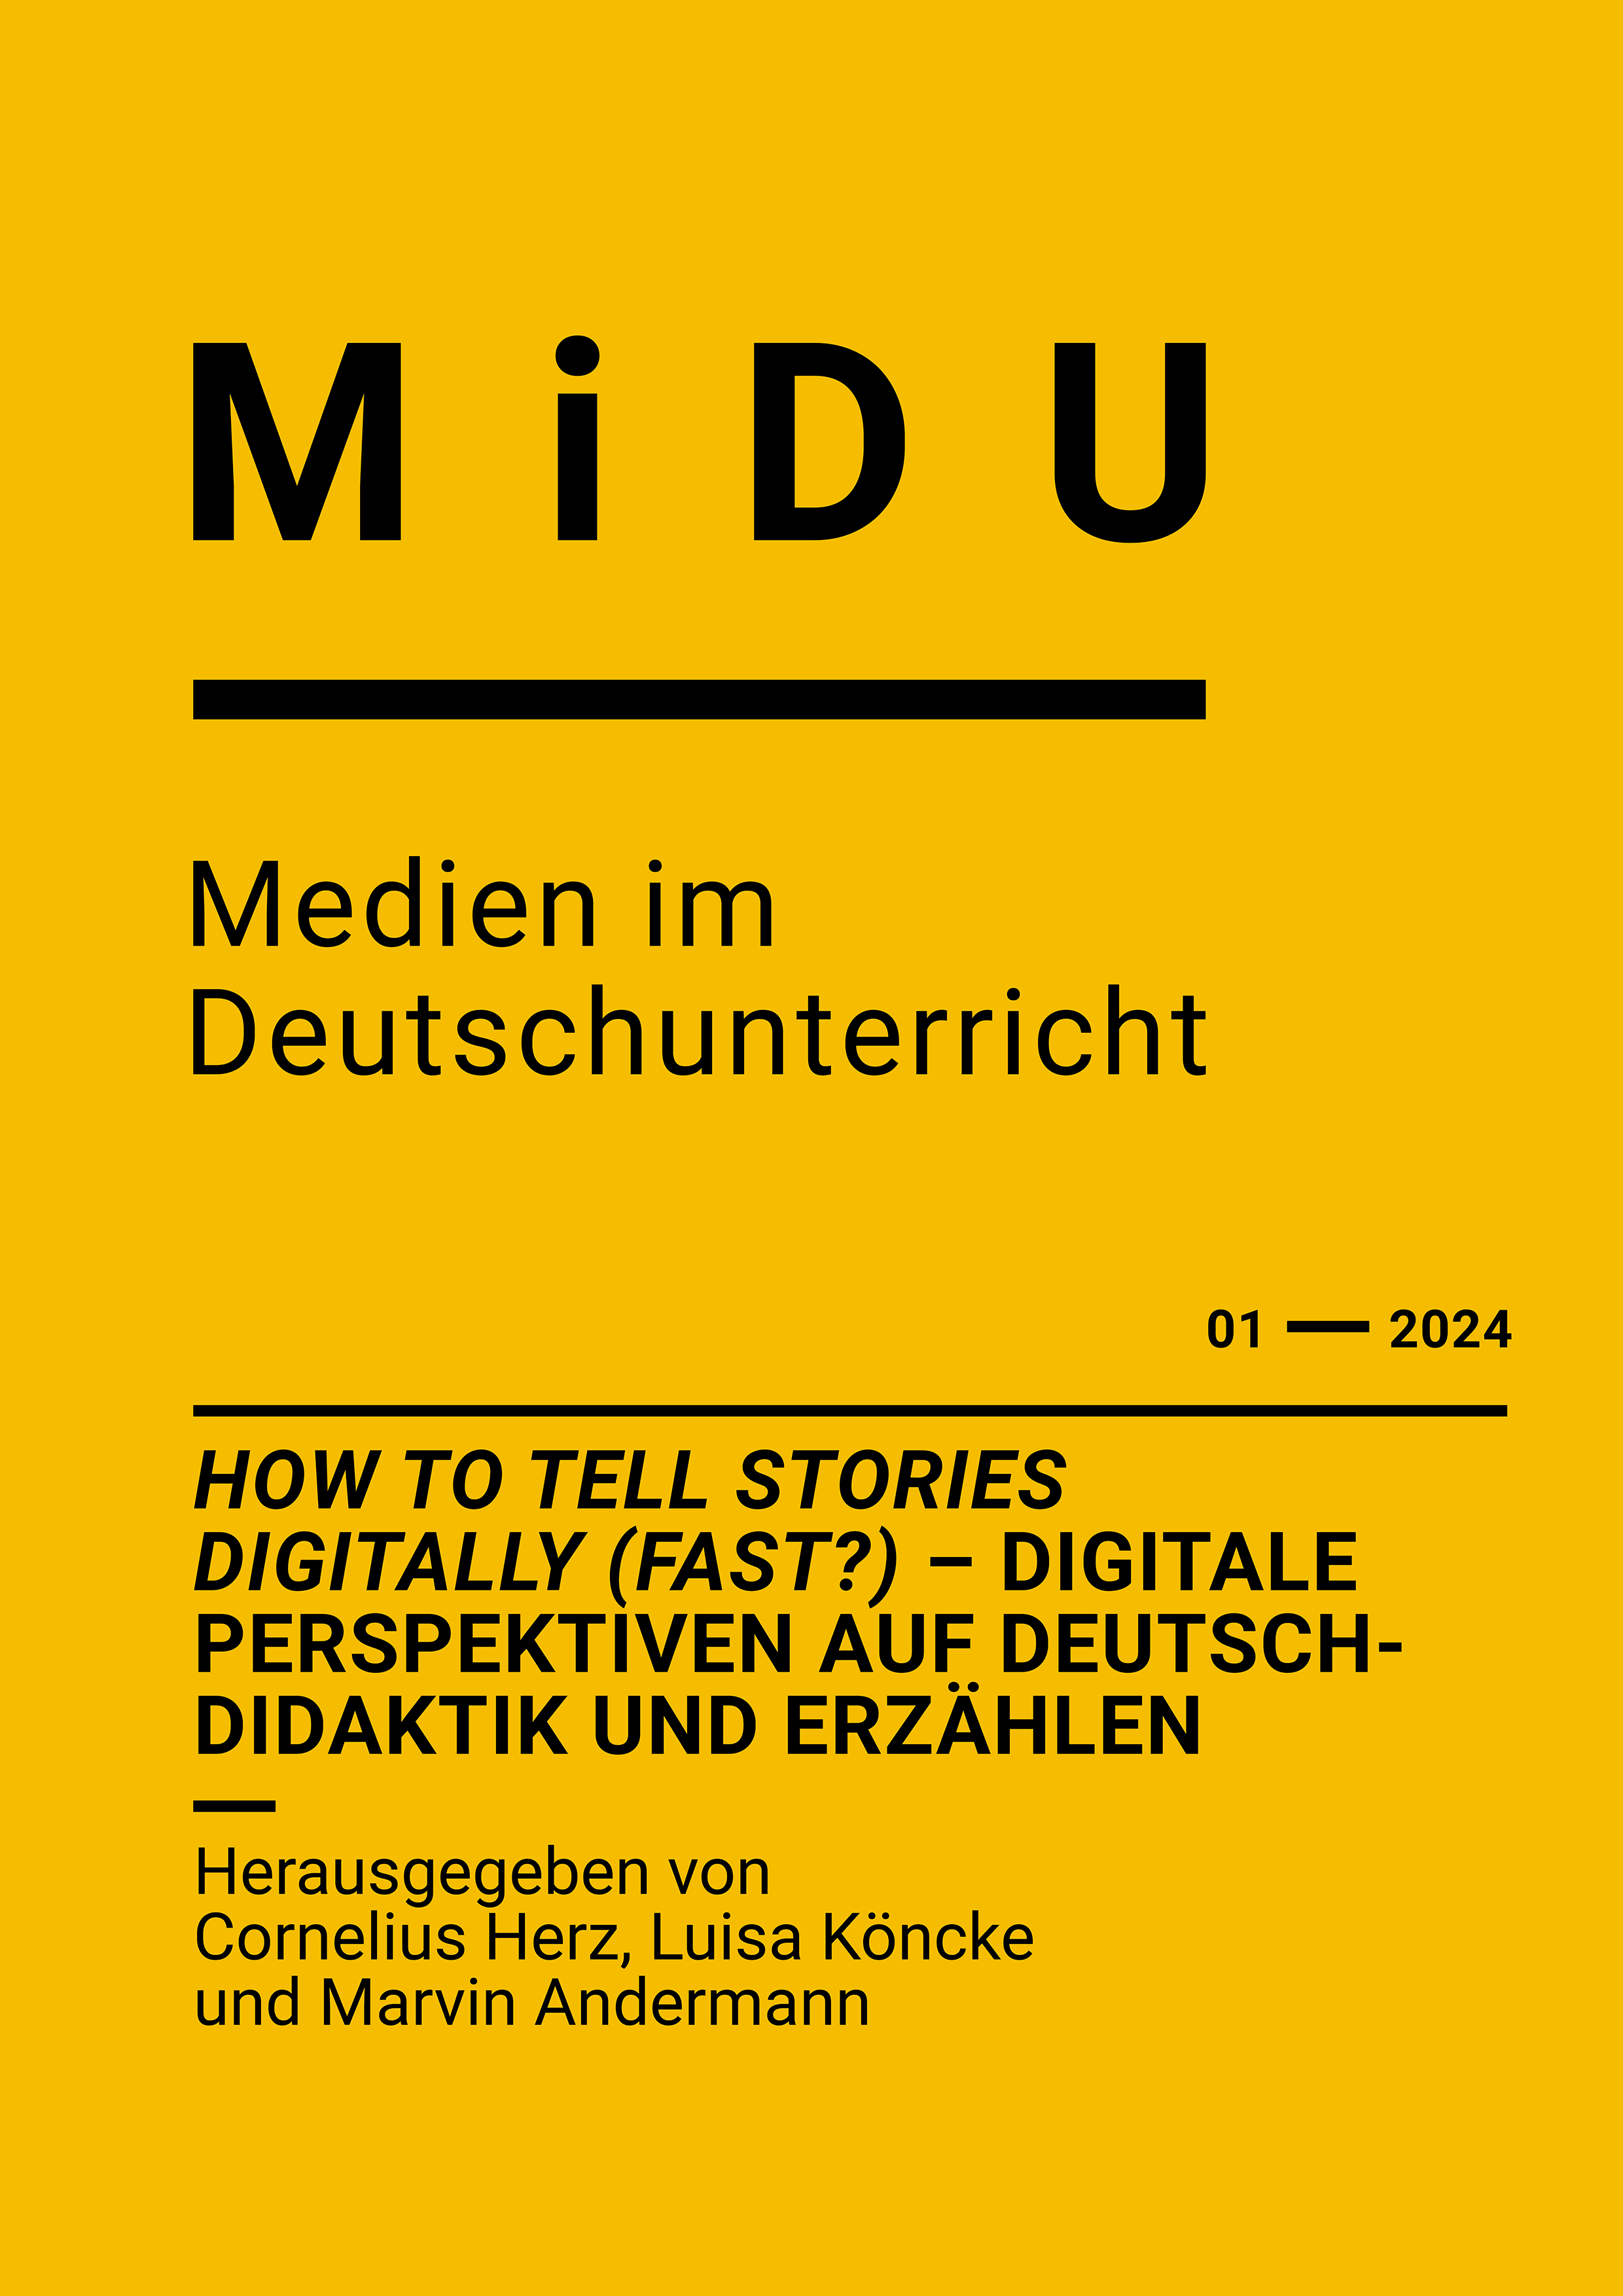 gelbes MiDU-Titelbild mit der Überschrift der Ausgabe  1/2024 "How to tell stories digitally (fast?) – Digitale Perspektiven auf Deutschdidaktik und Erzählen"